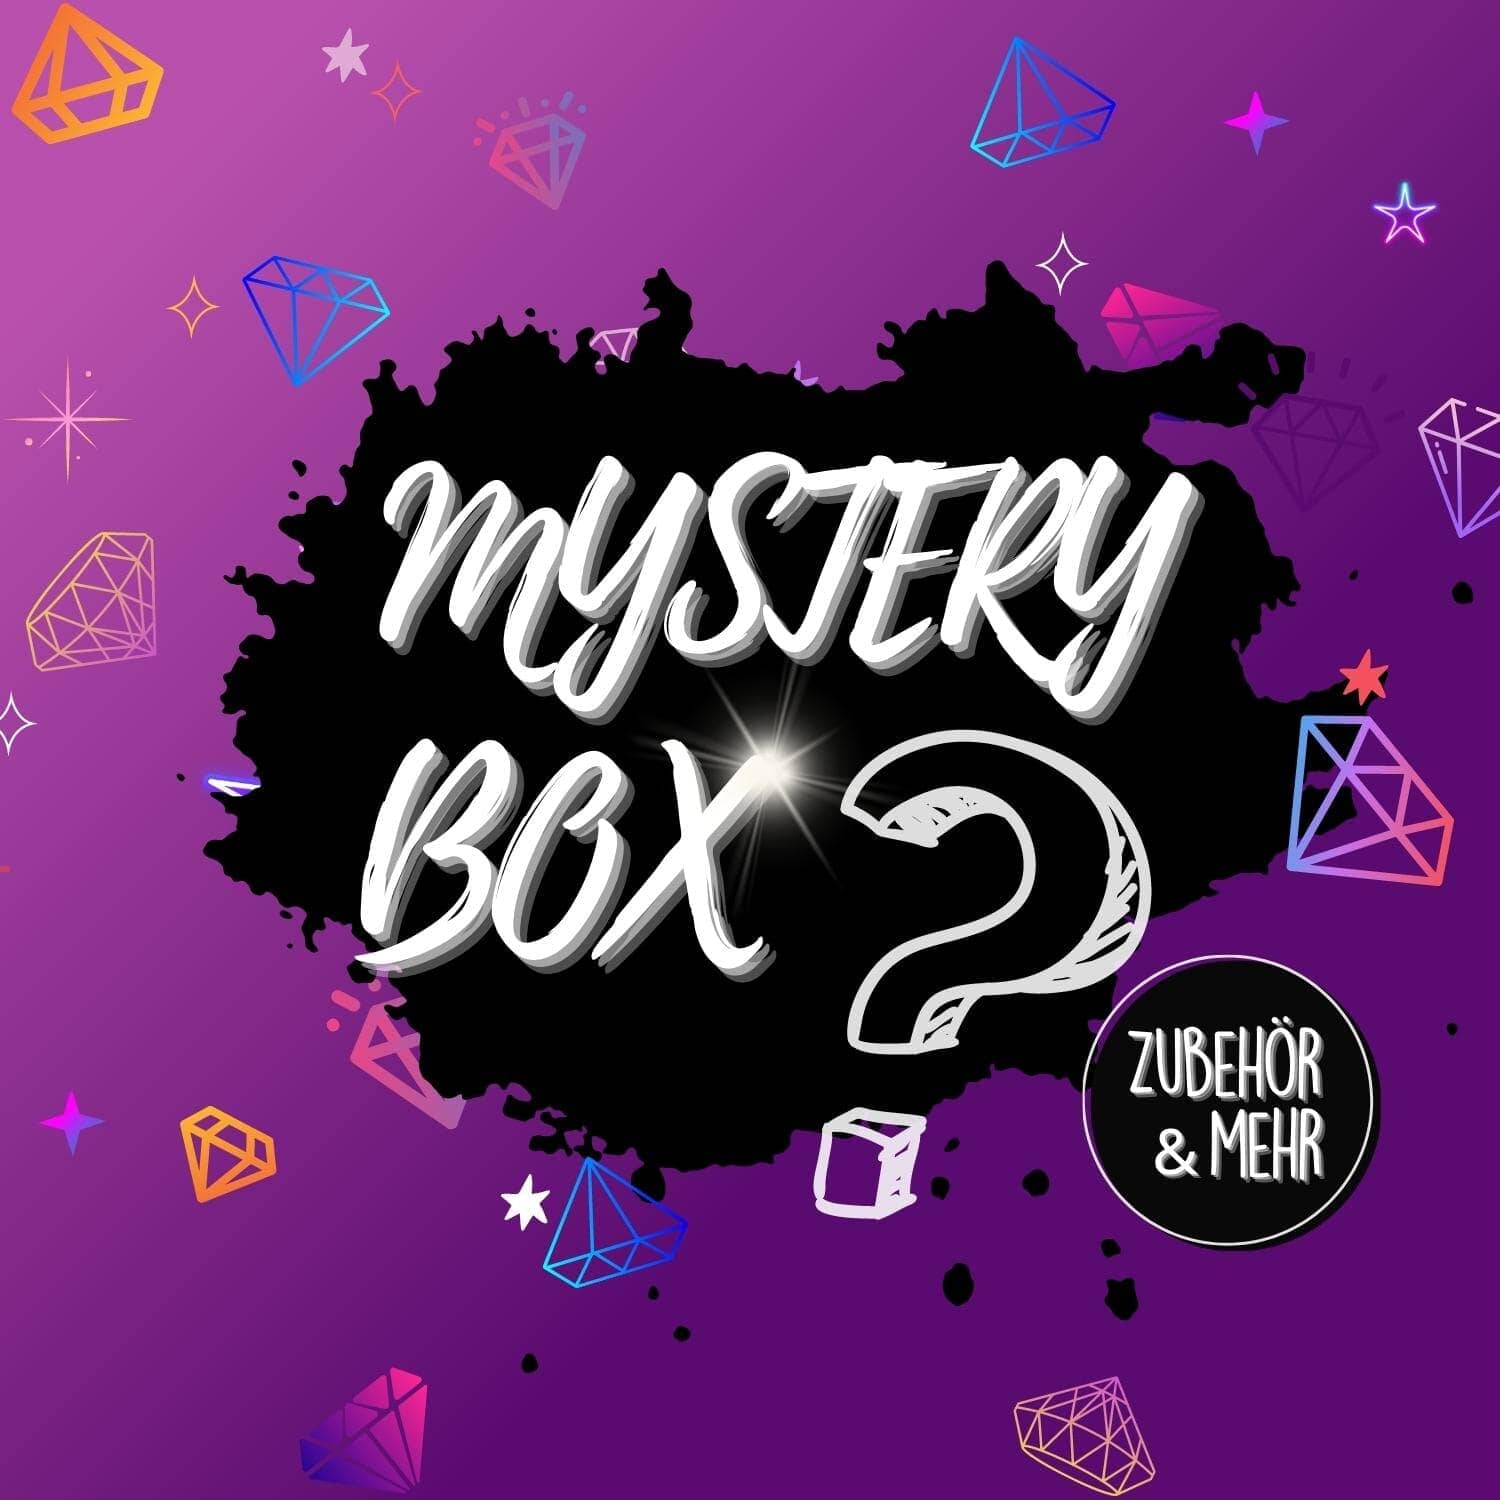 MysteryBox #9 - Zubehör & Mehr (4-6 Artikel)